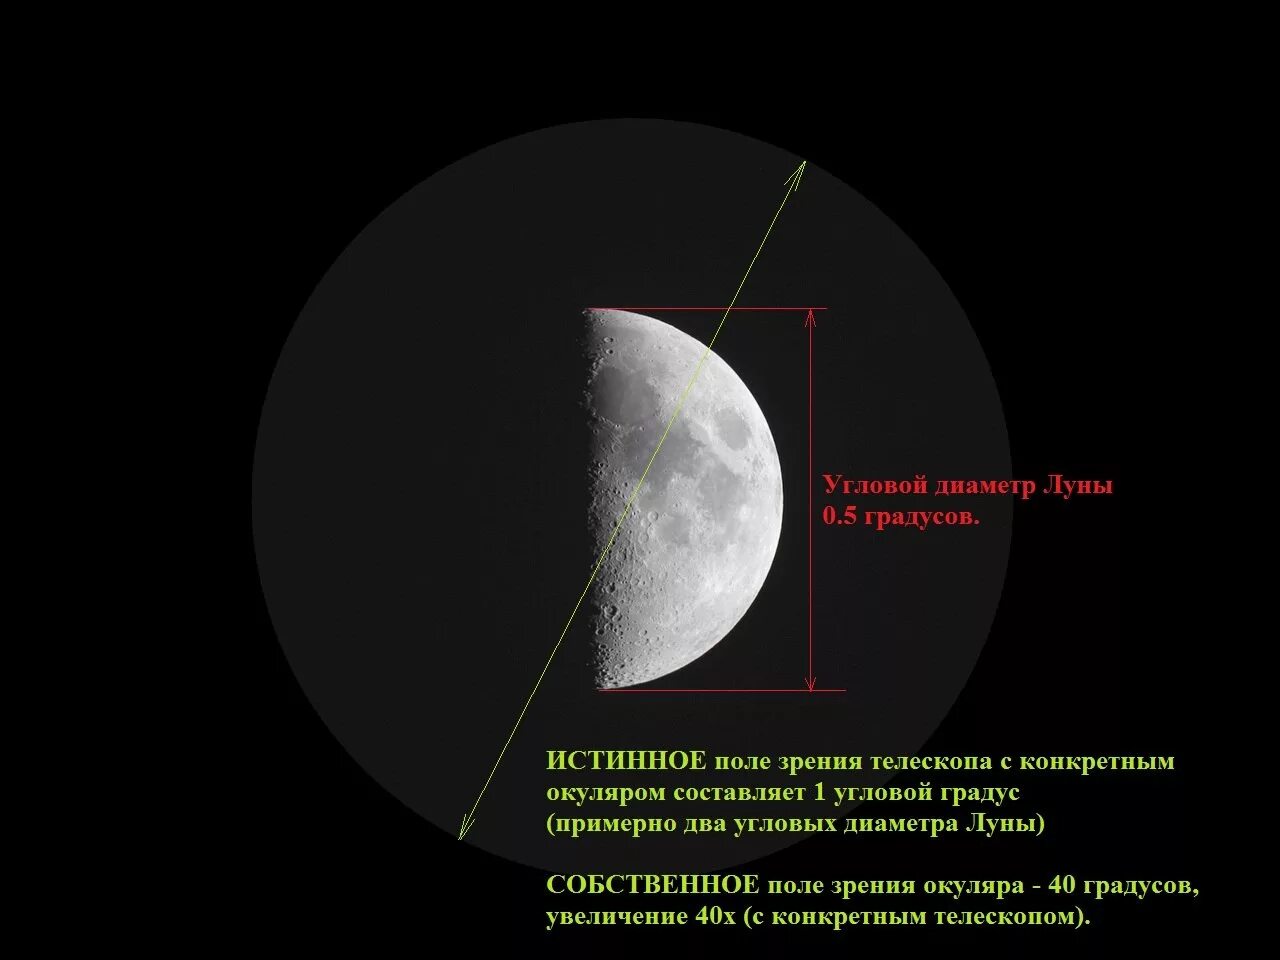 Видимое поле зрения окуляра. Поле зрения телескопа. Кратность увеличения телескопа. Угловой диаметр лунного диска.